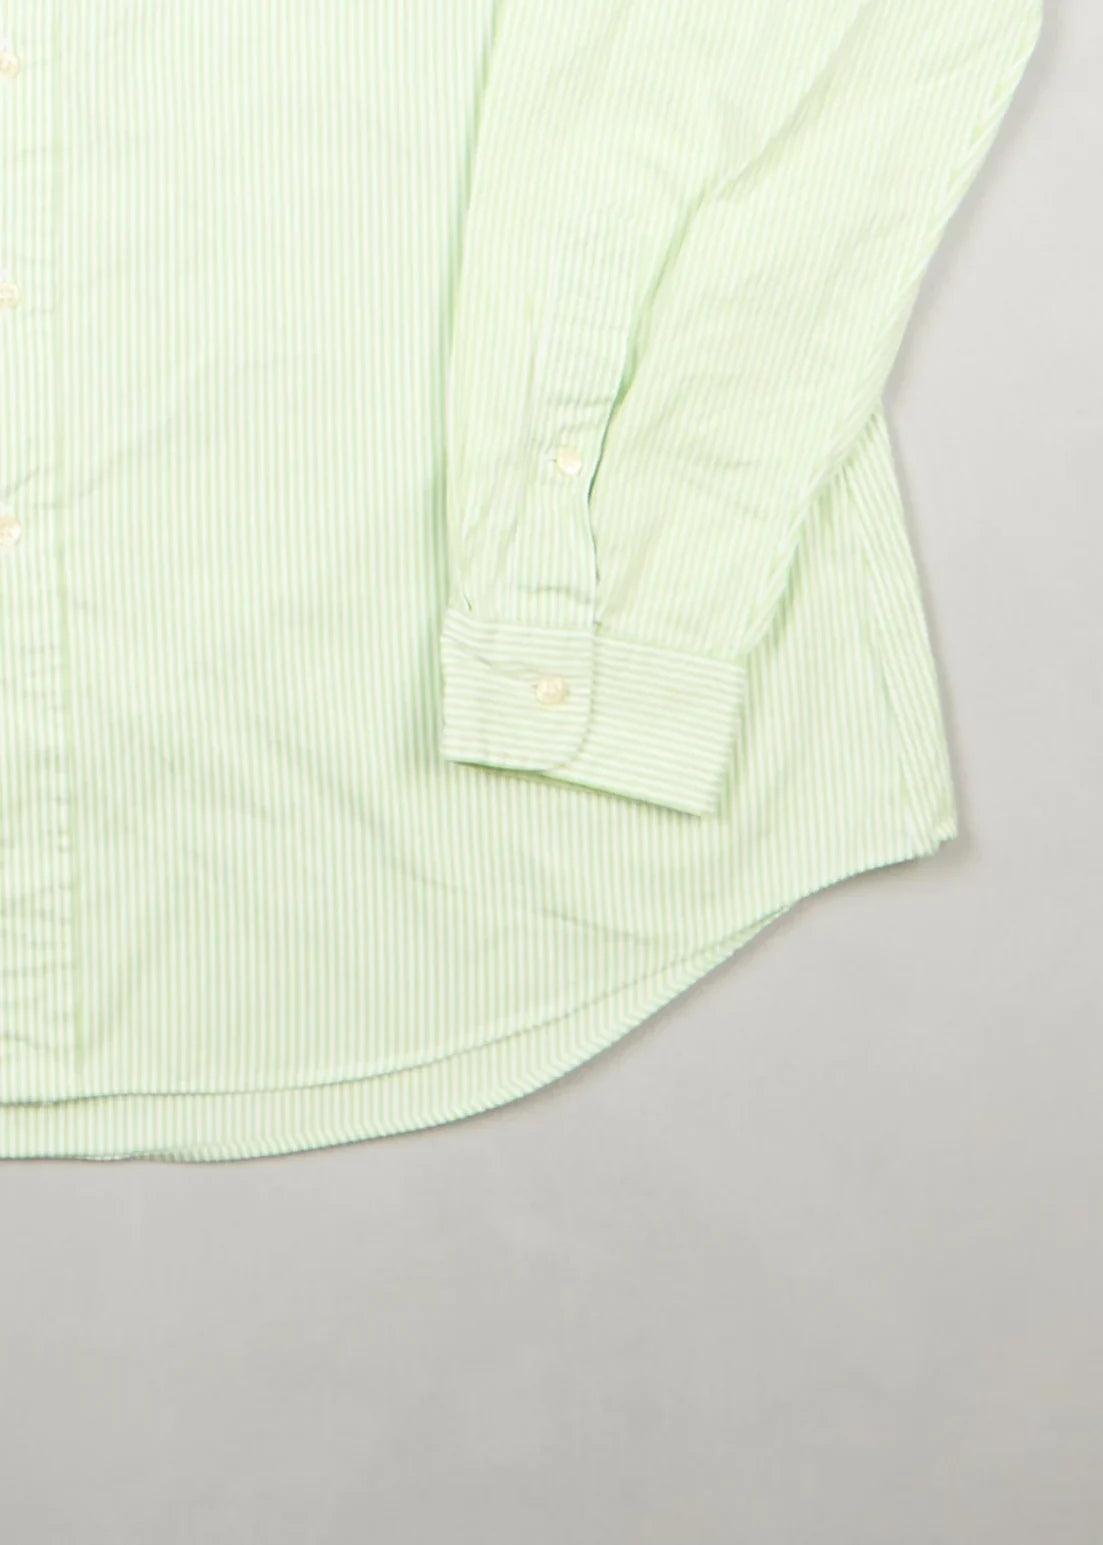 Ralph Lauren - Shirt (L) Bottom Right